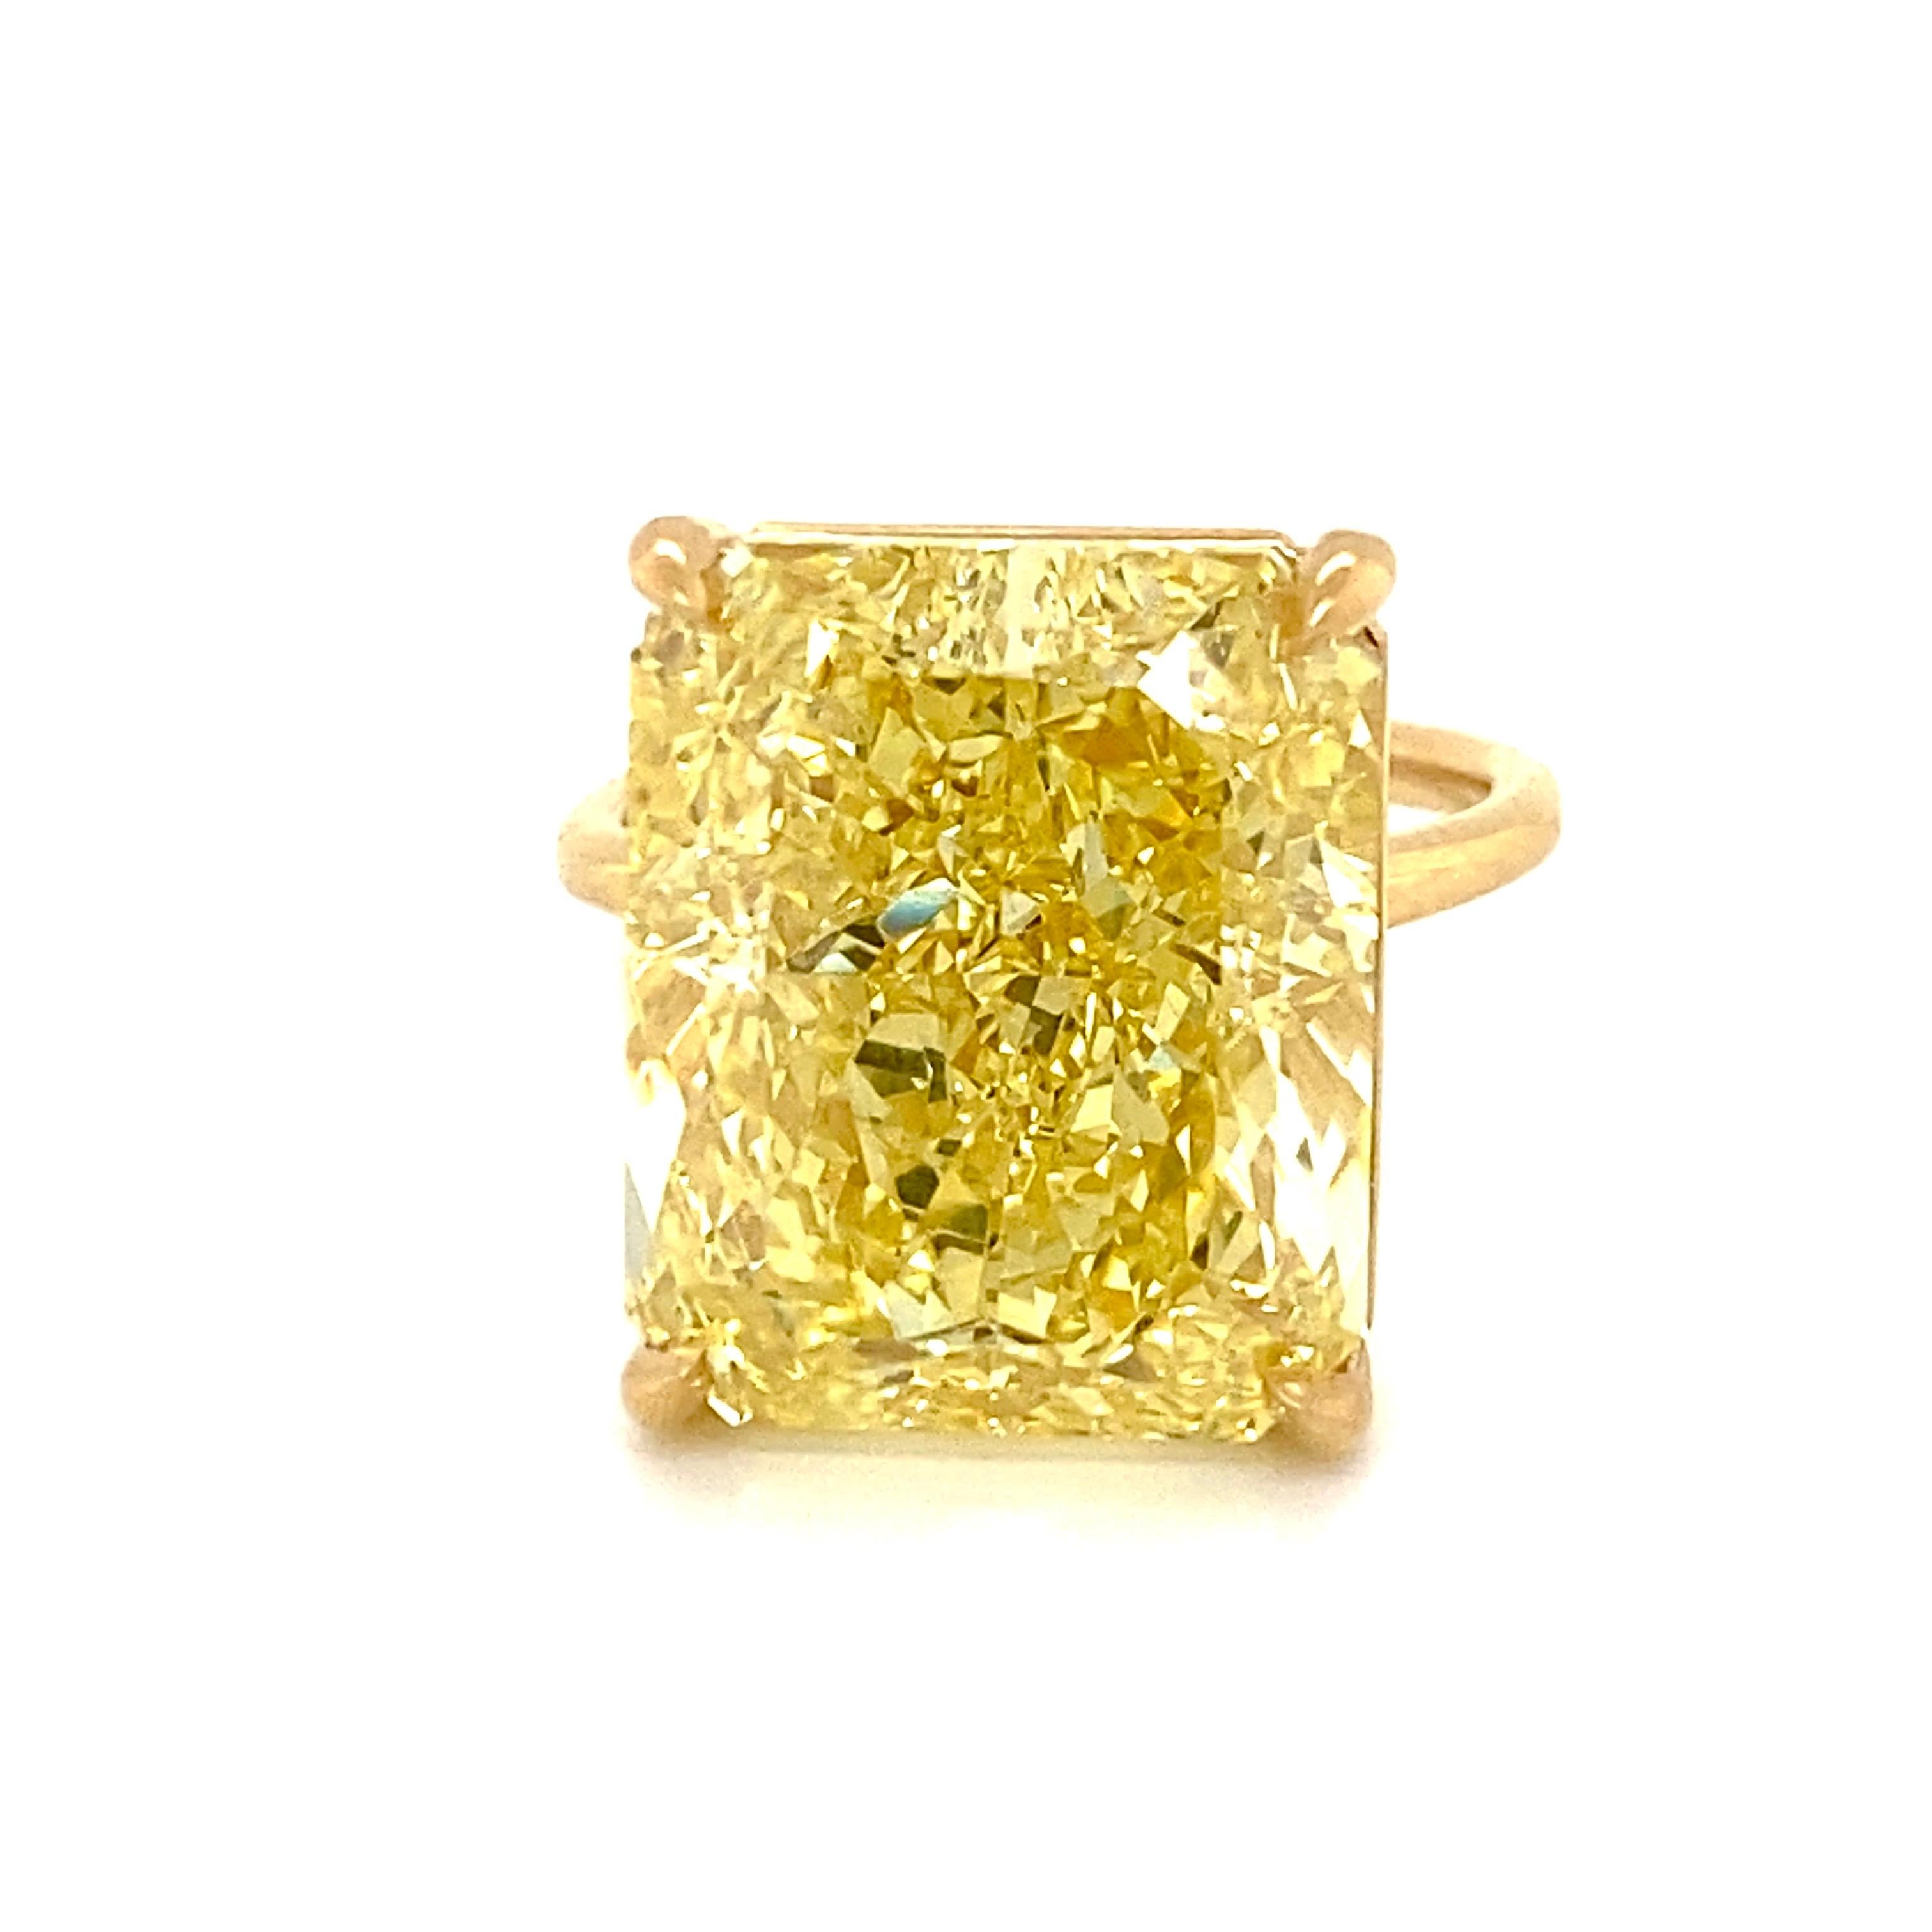 Aus dem Tresor von Emilio Jewelry,

Mit einem prächtigen 19,00 Karat + langgestreckten gelben Diamanten im Brillantschliff. Die Farbsättigung ist sehr stark ein Muss, unserer Meinung nach mit einer visuellen comp zu einem intensiven sehen. Bitte